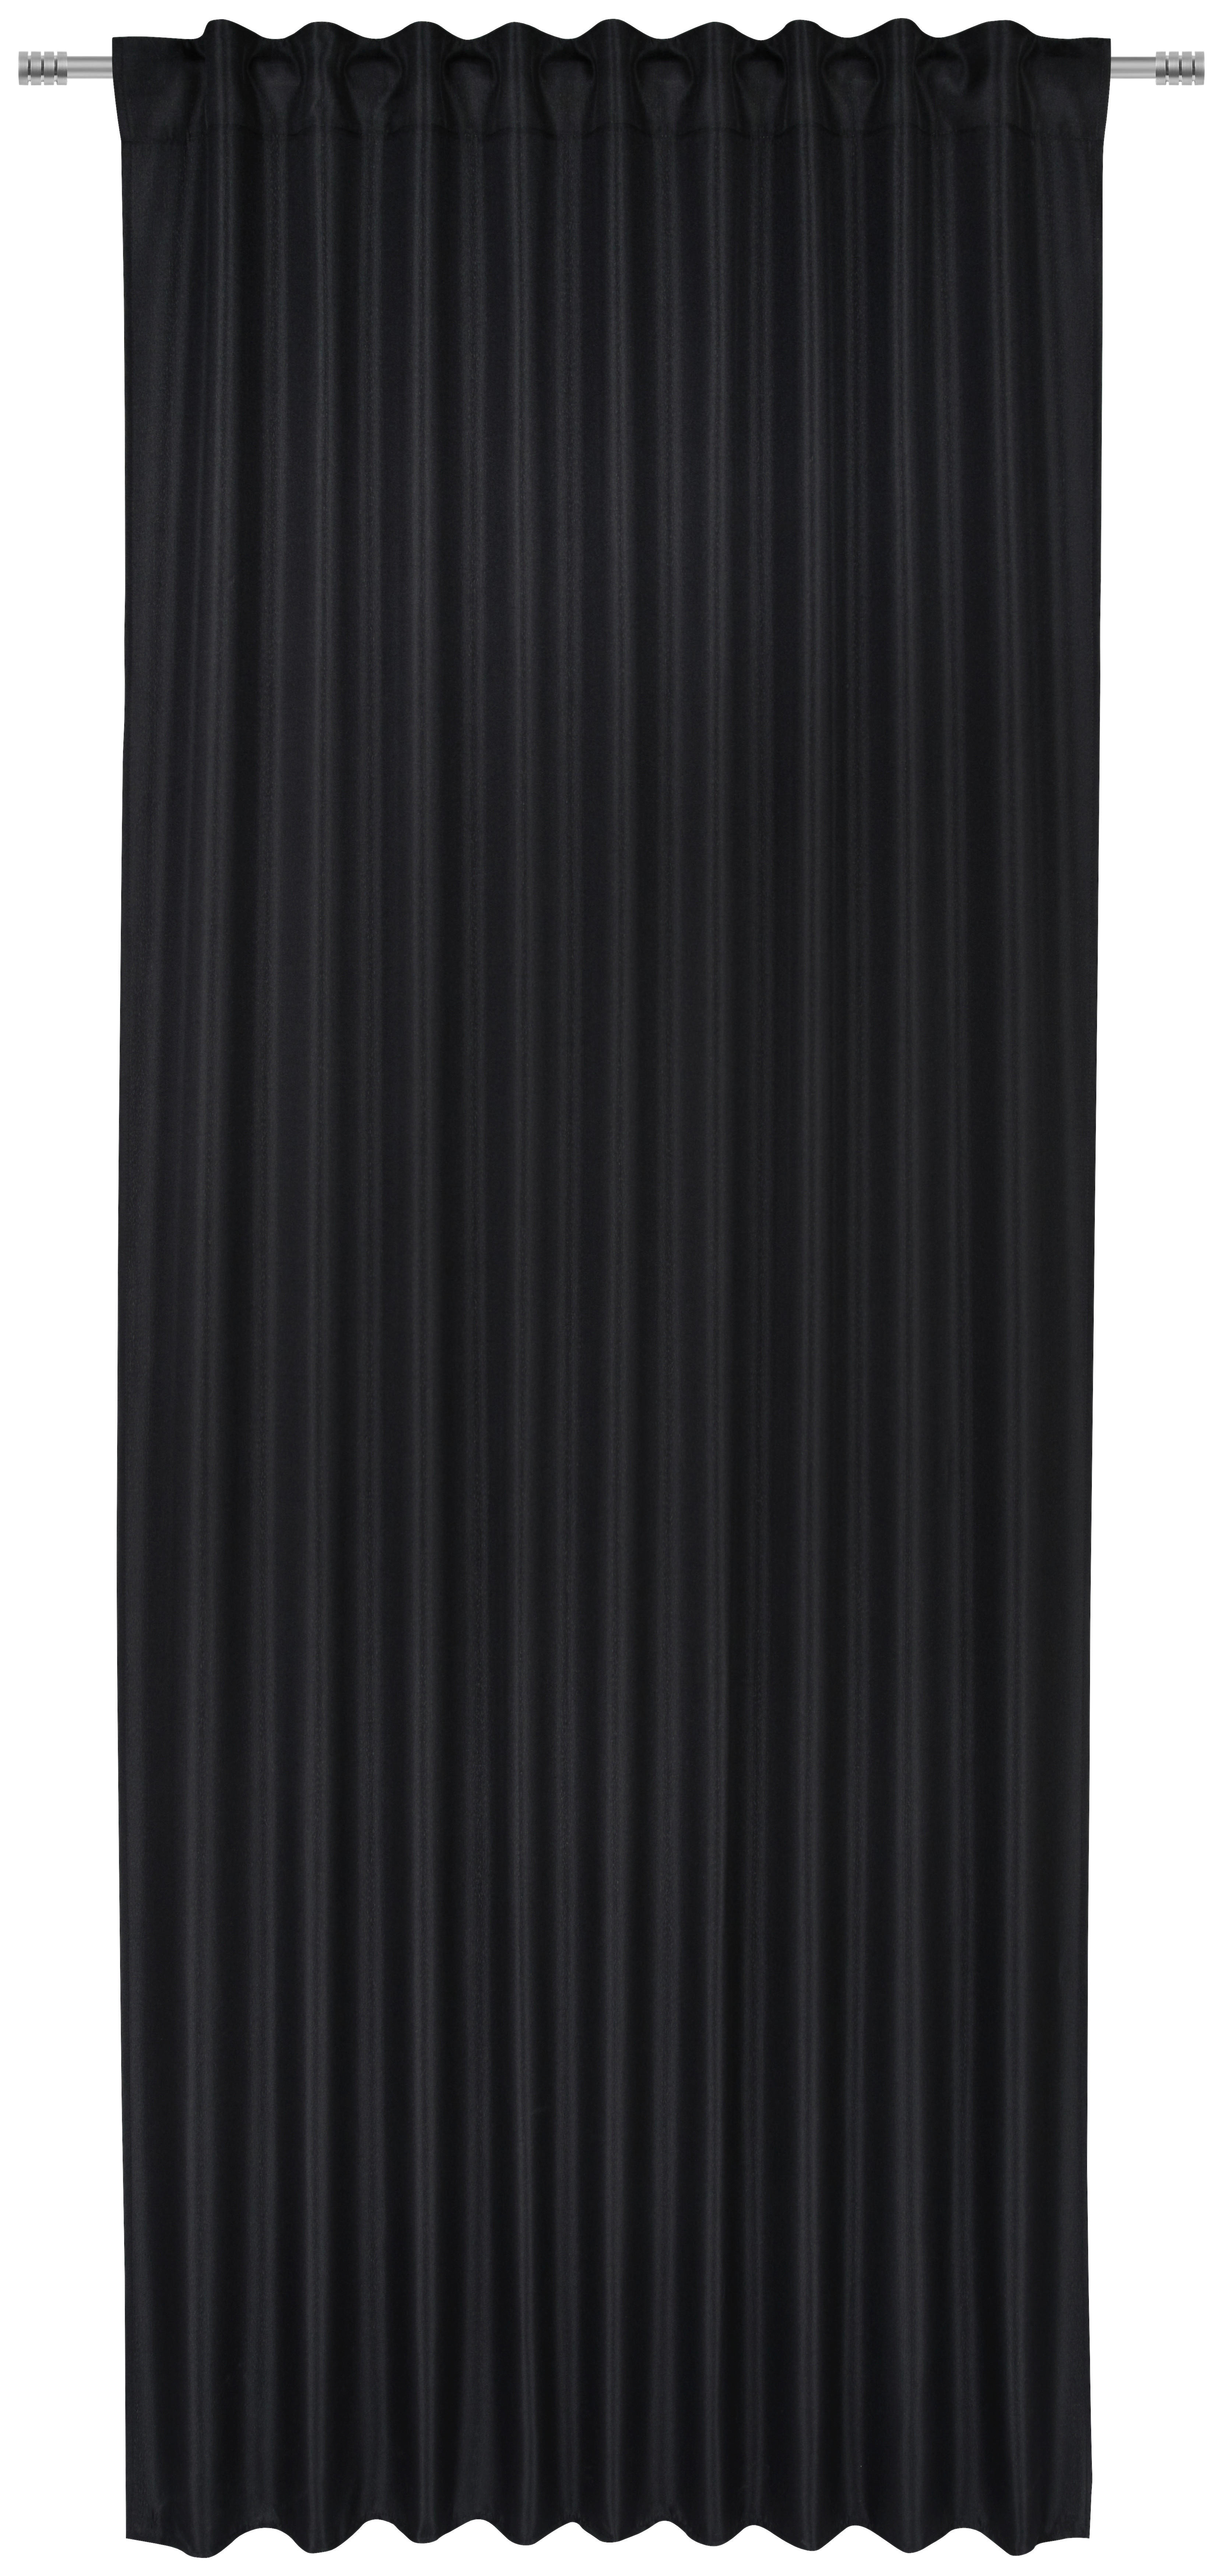 HOTOVÝ ZÁVĚS, neprůsvitné, 140/245 cm - černá, Konvenční, textil (140/245cm) - Boxxx